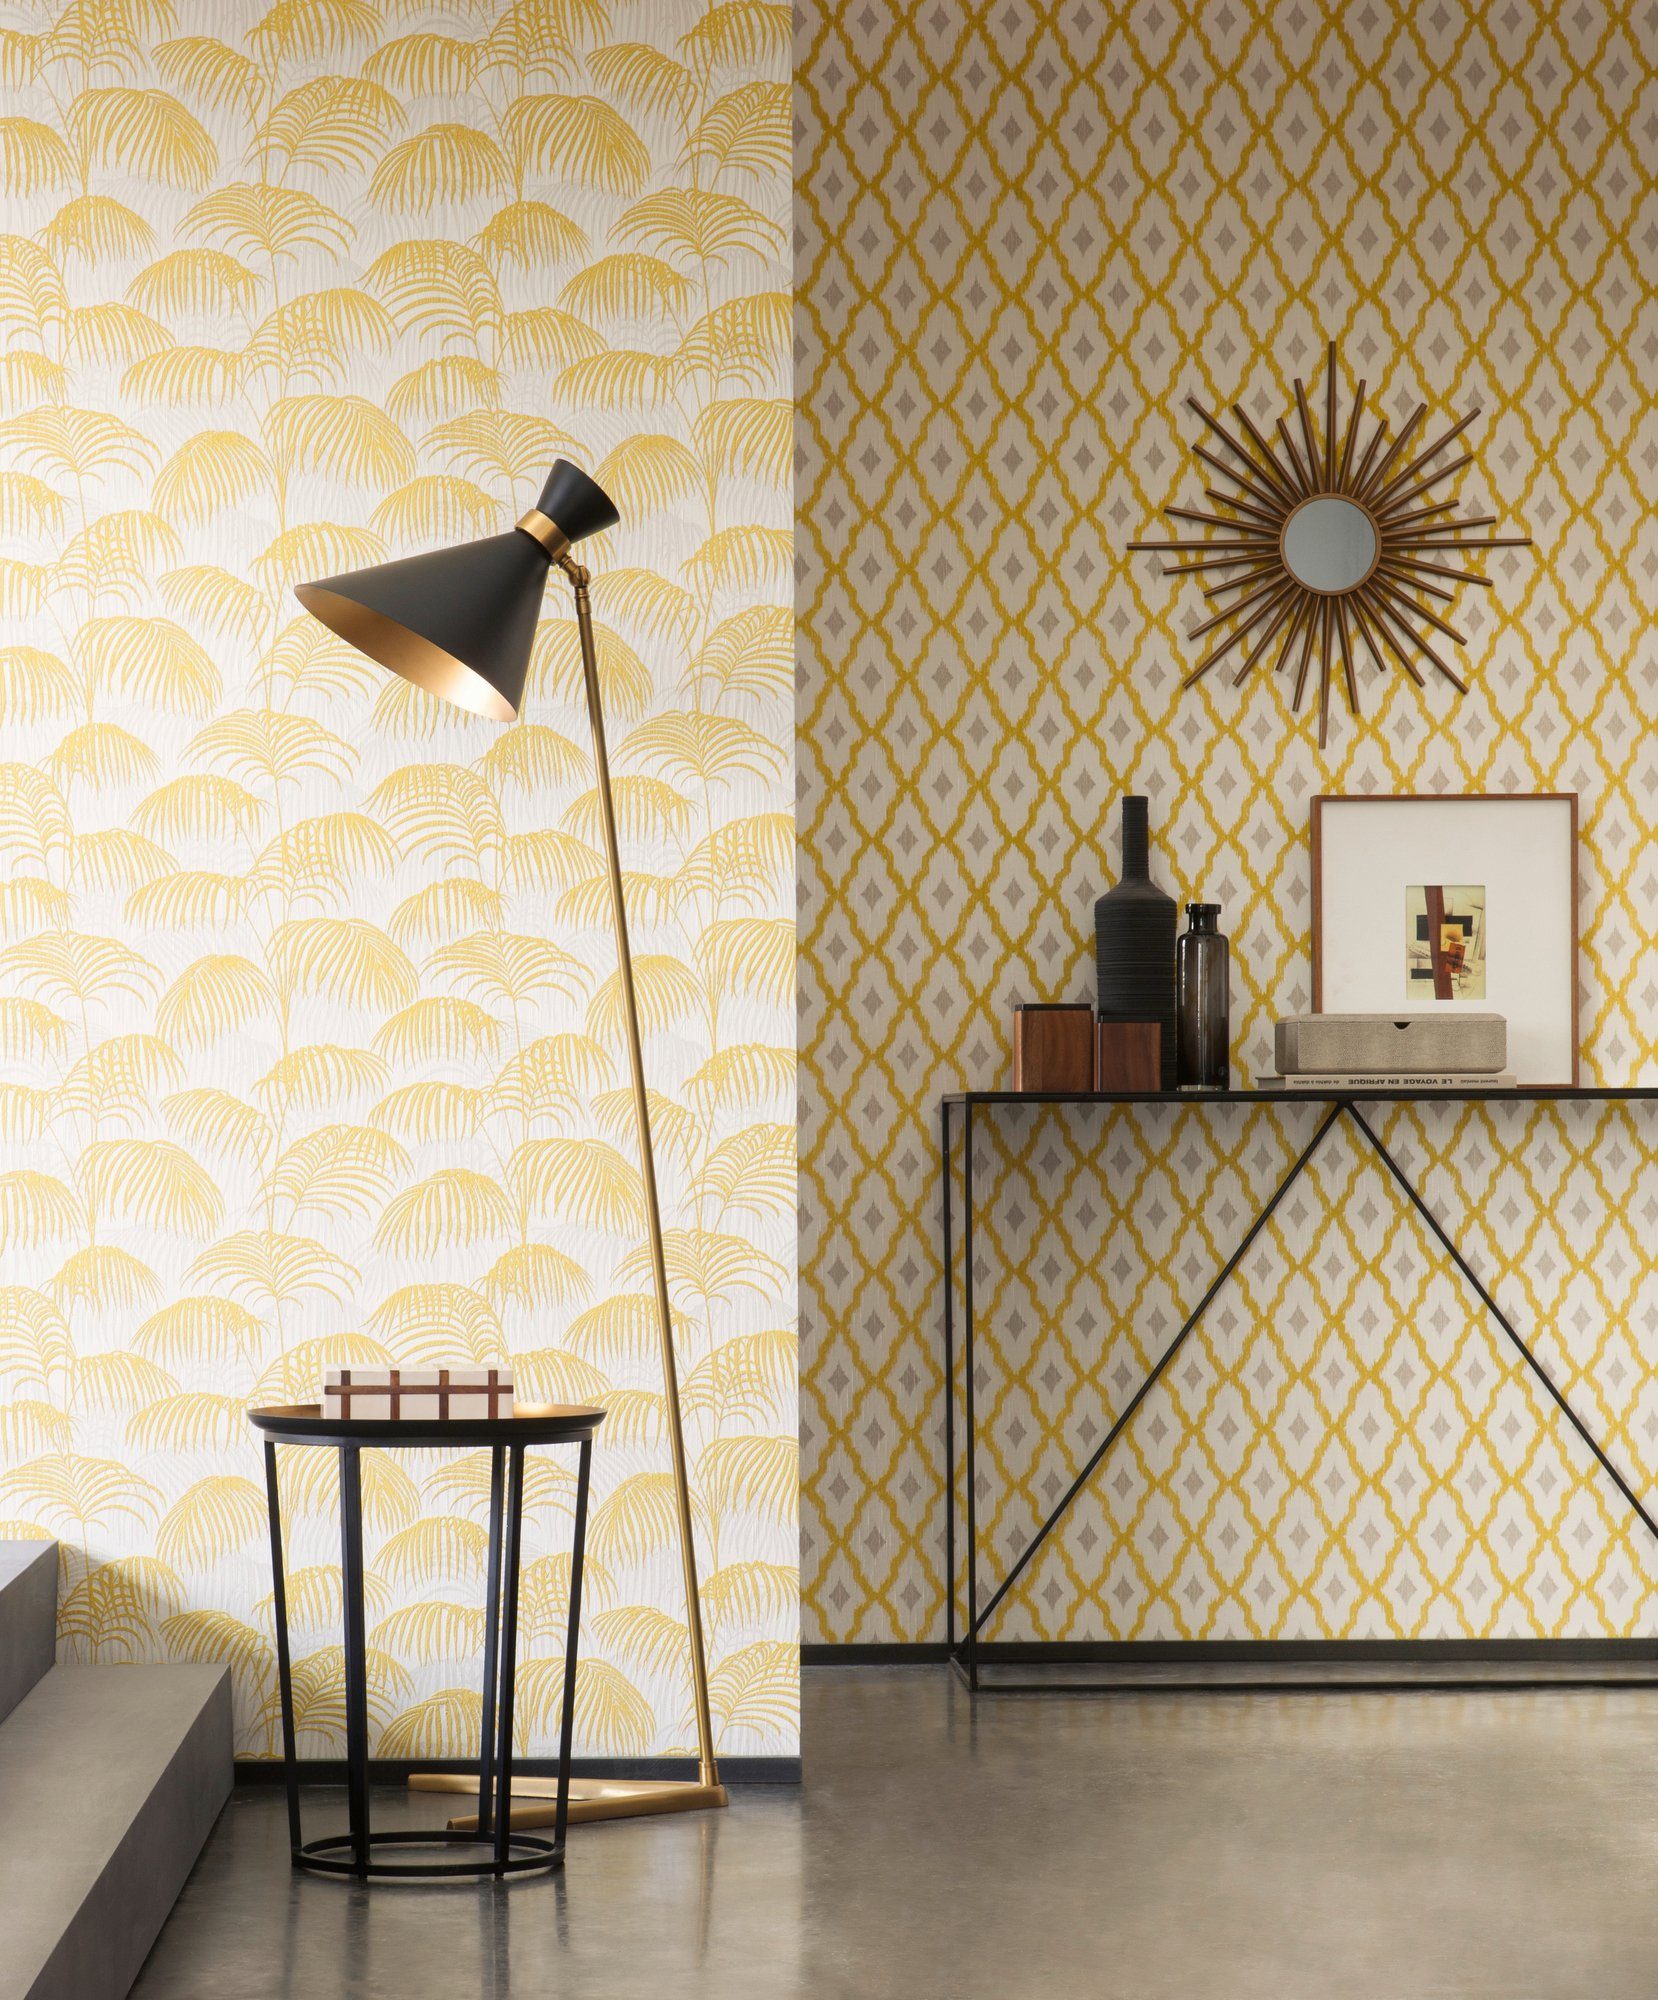 Dschungeltapete floral, Paper Tessuto, samtig, Architects Création gold/gelb/weiß Tapete A.S. Textiltapete botanisch, Palmen